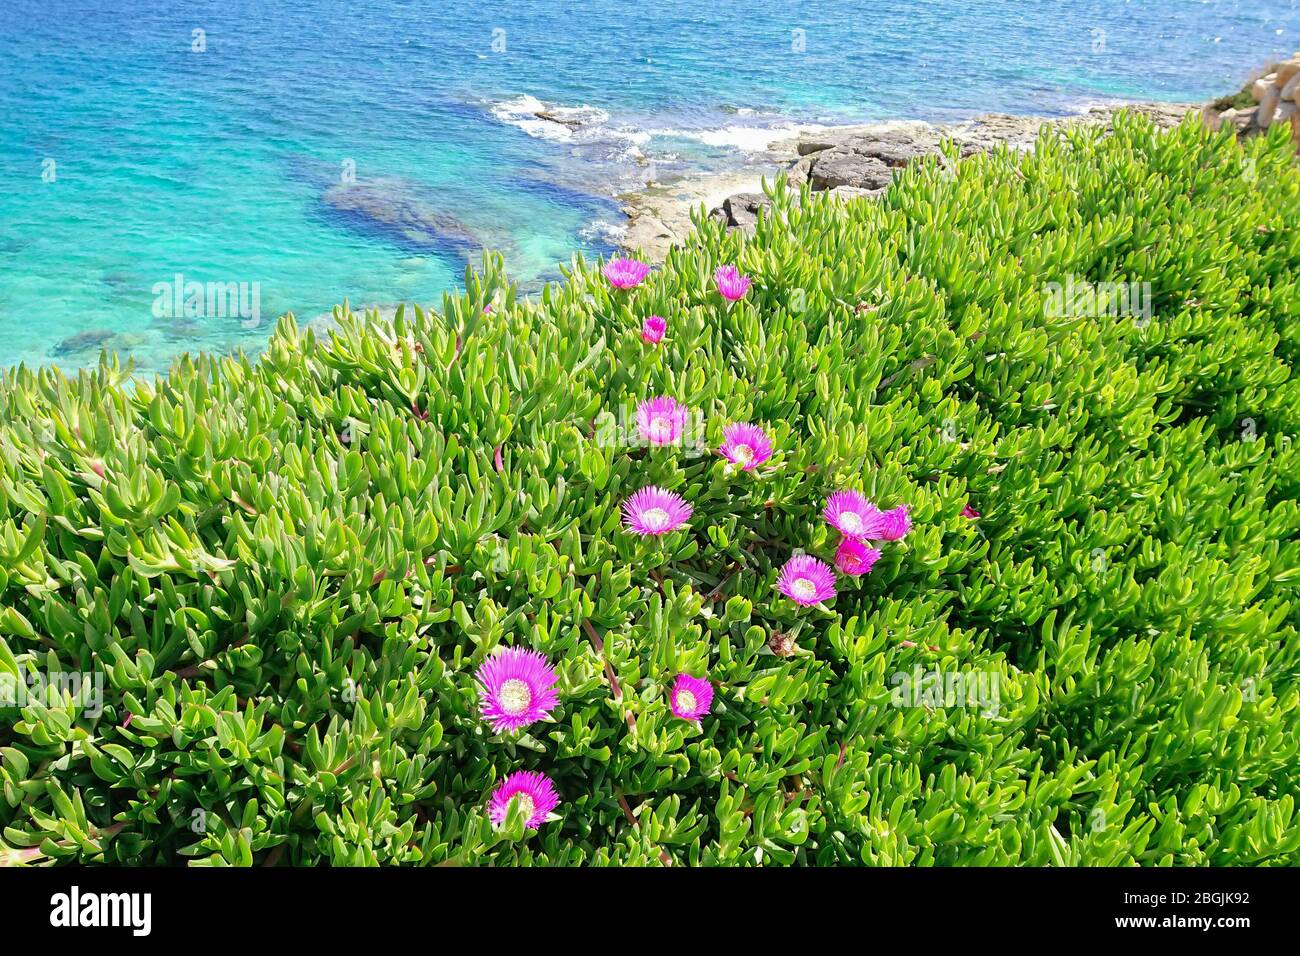 Blühende Blume von Carpobrotus Chilensis entlang der Küste des Mittelmeers. Typische Sukkulente Pflanze für subtropische Gebiete Stockfoto